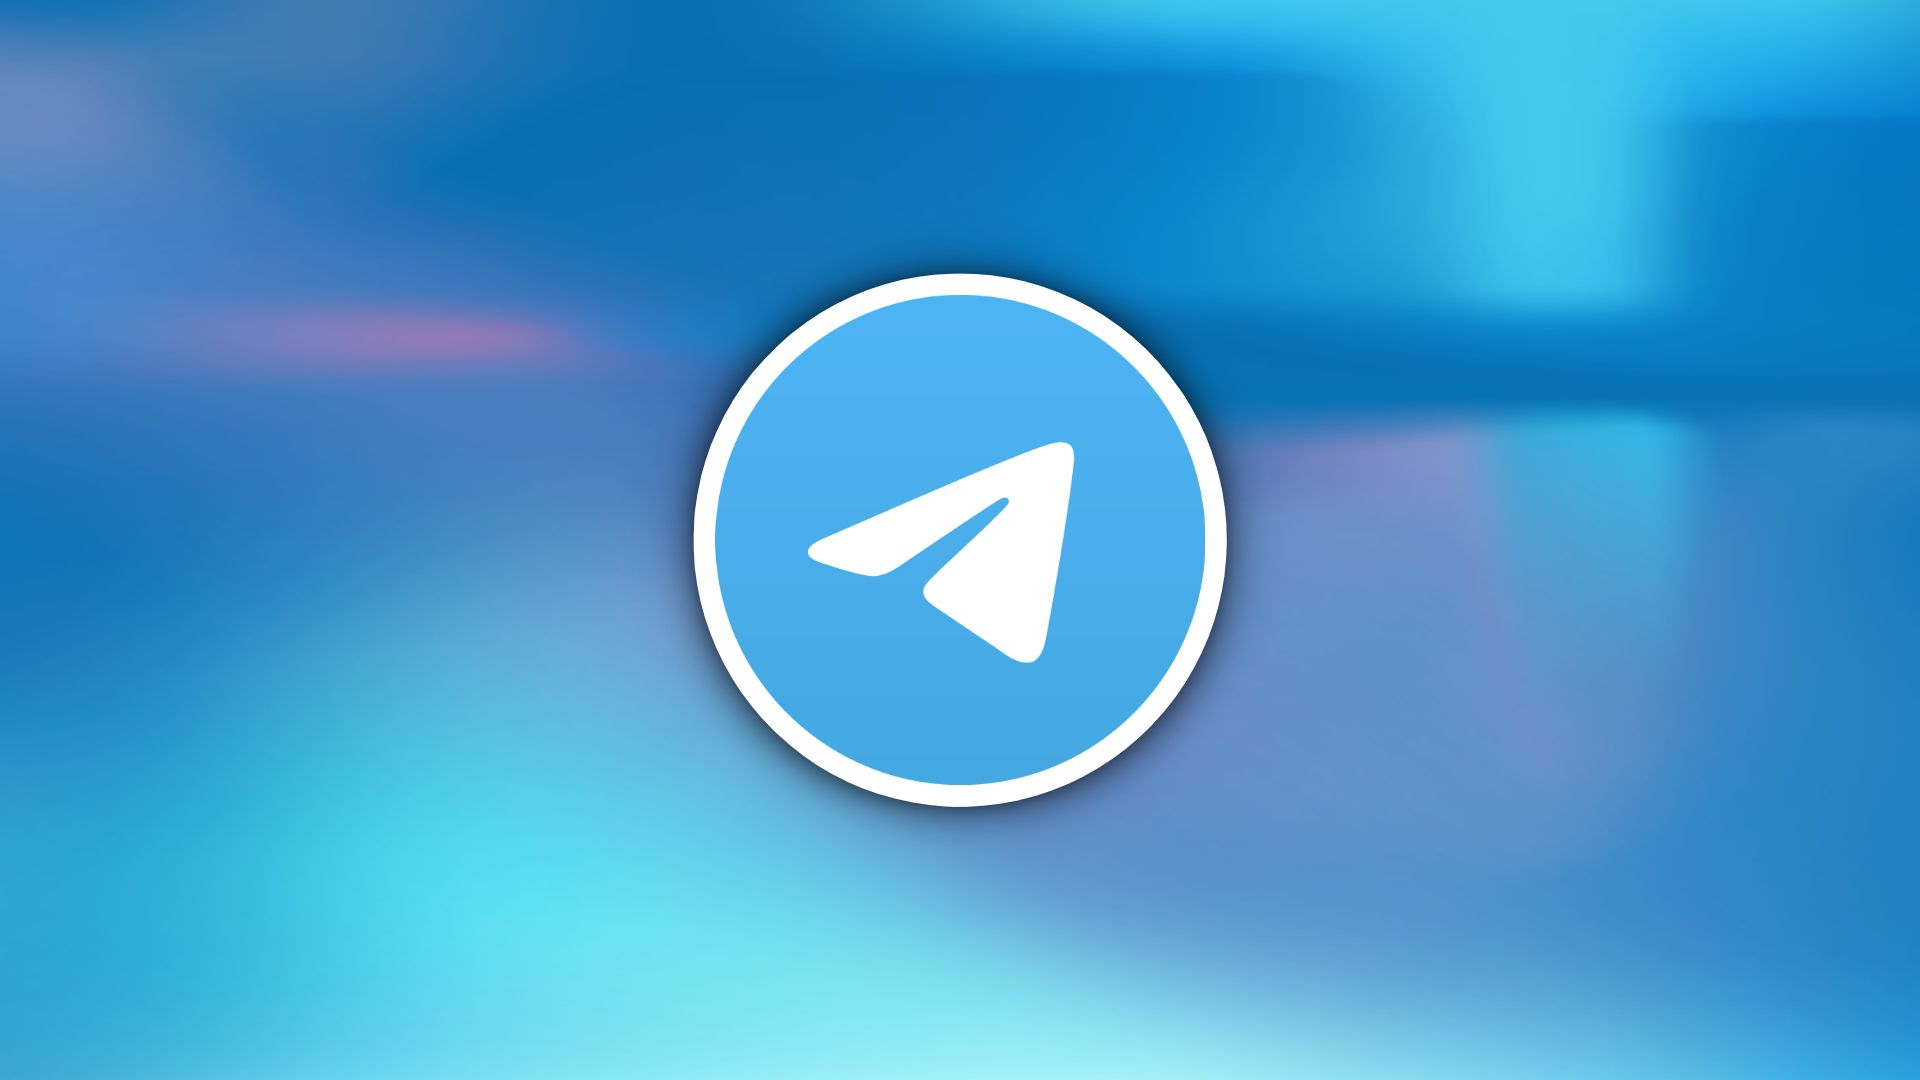 A Evolução do Telegram